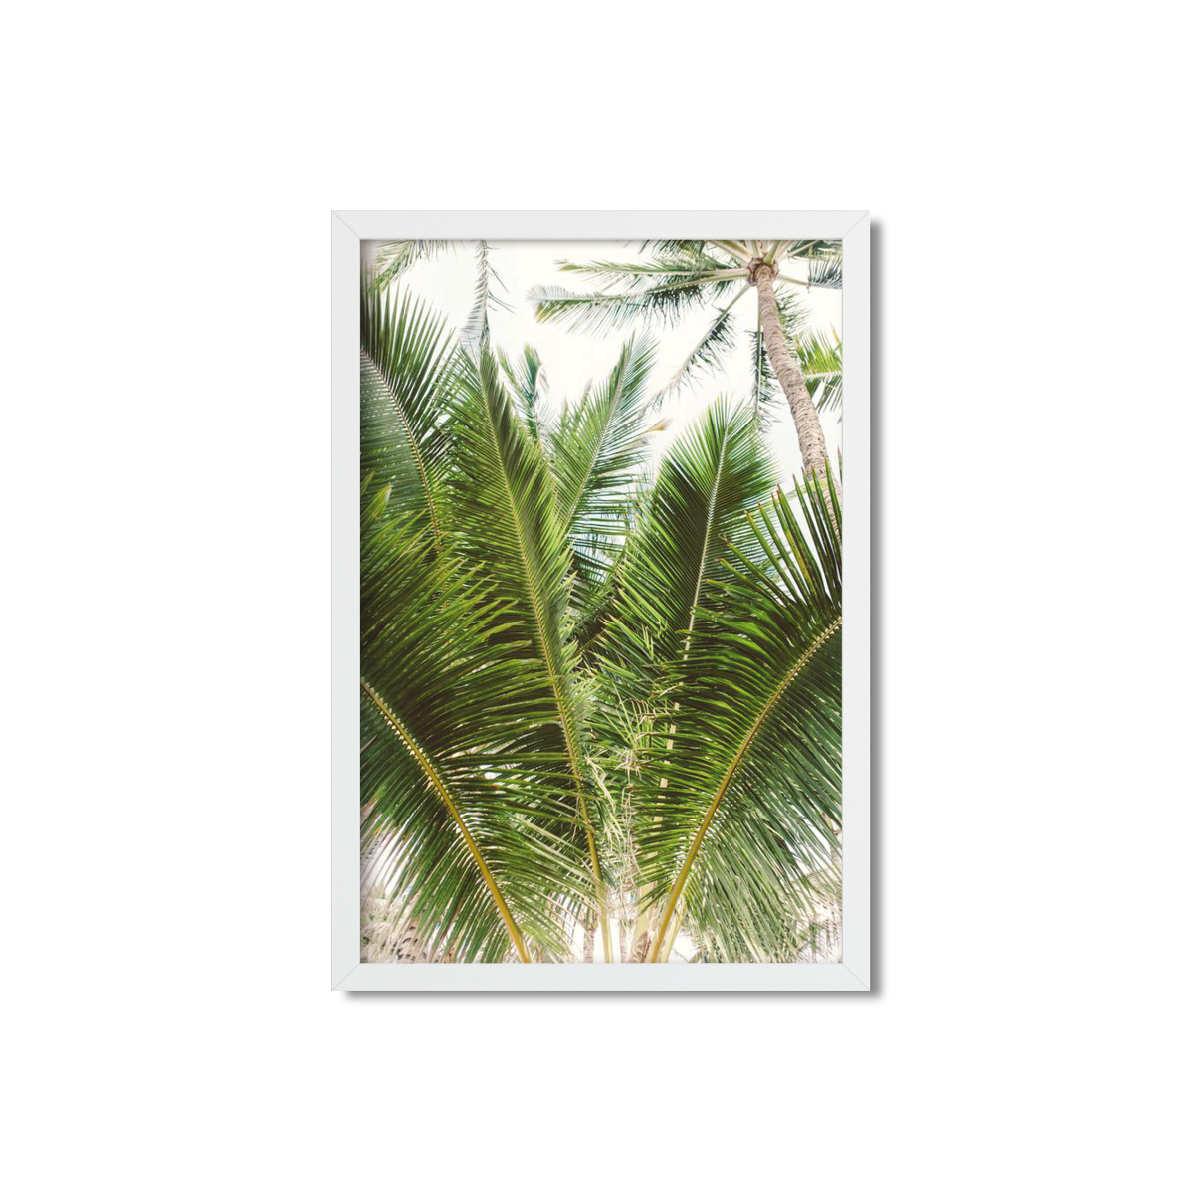 HAWAIIAN PALM TREES NO. 13